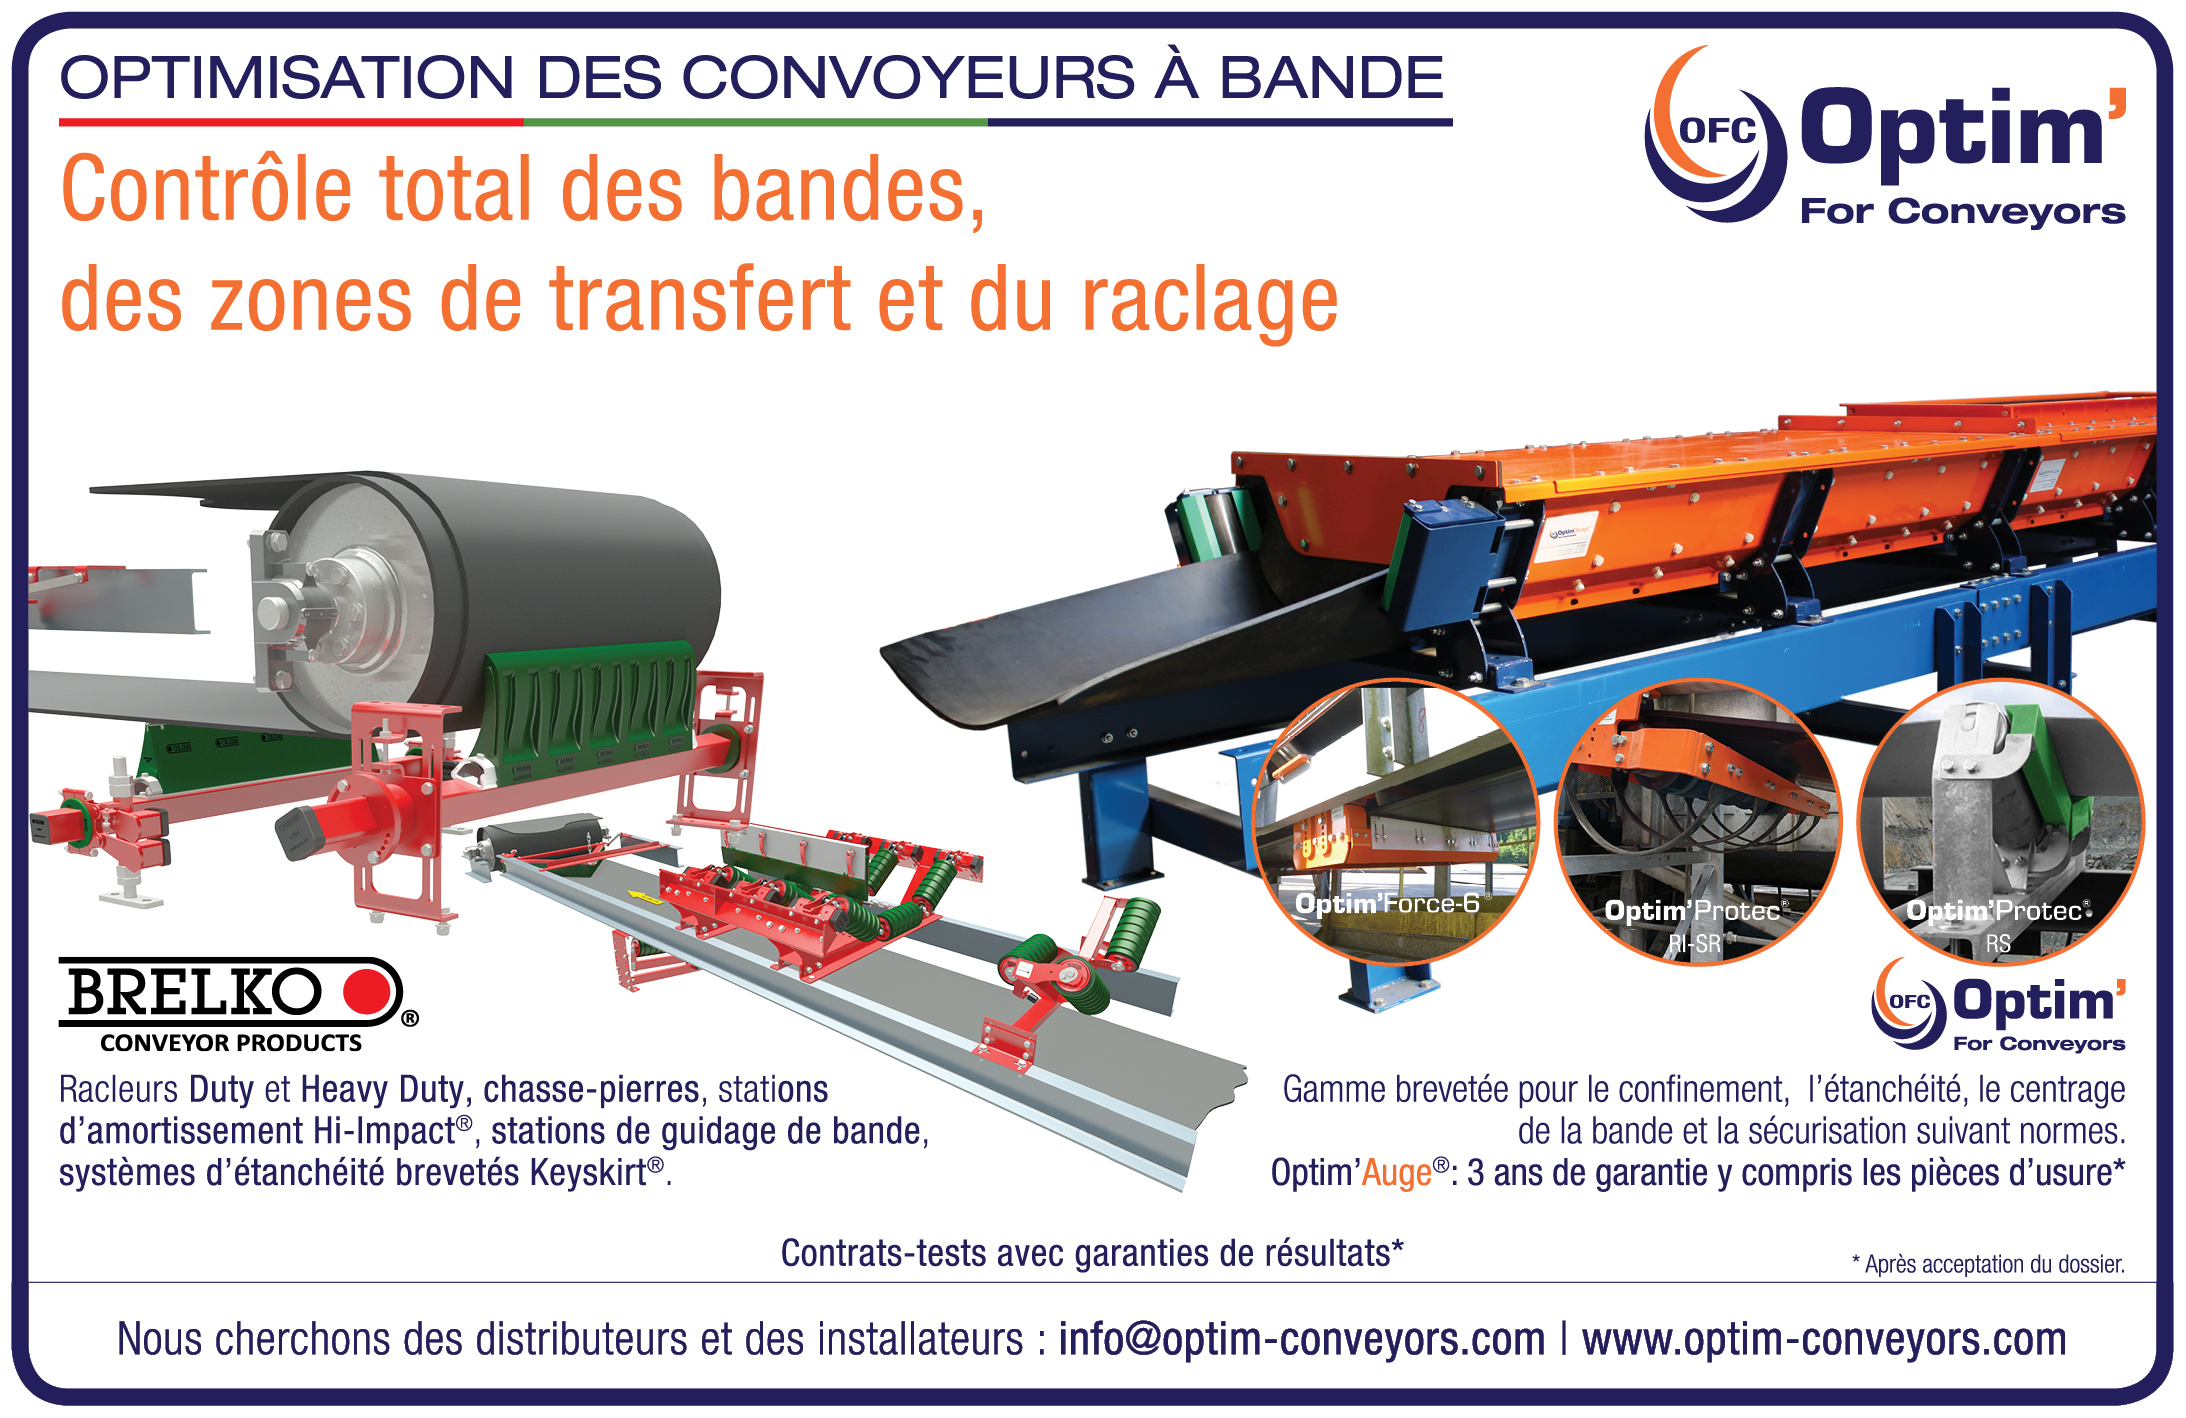 Publicité pour nos gammes Optim'For Conveyors et Brelko dans Infovrac